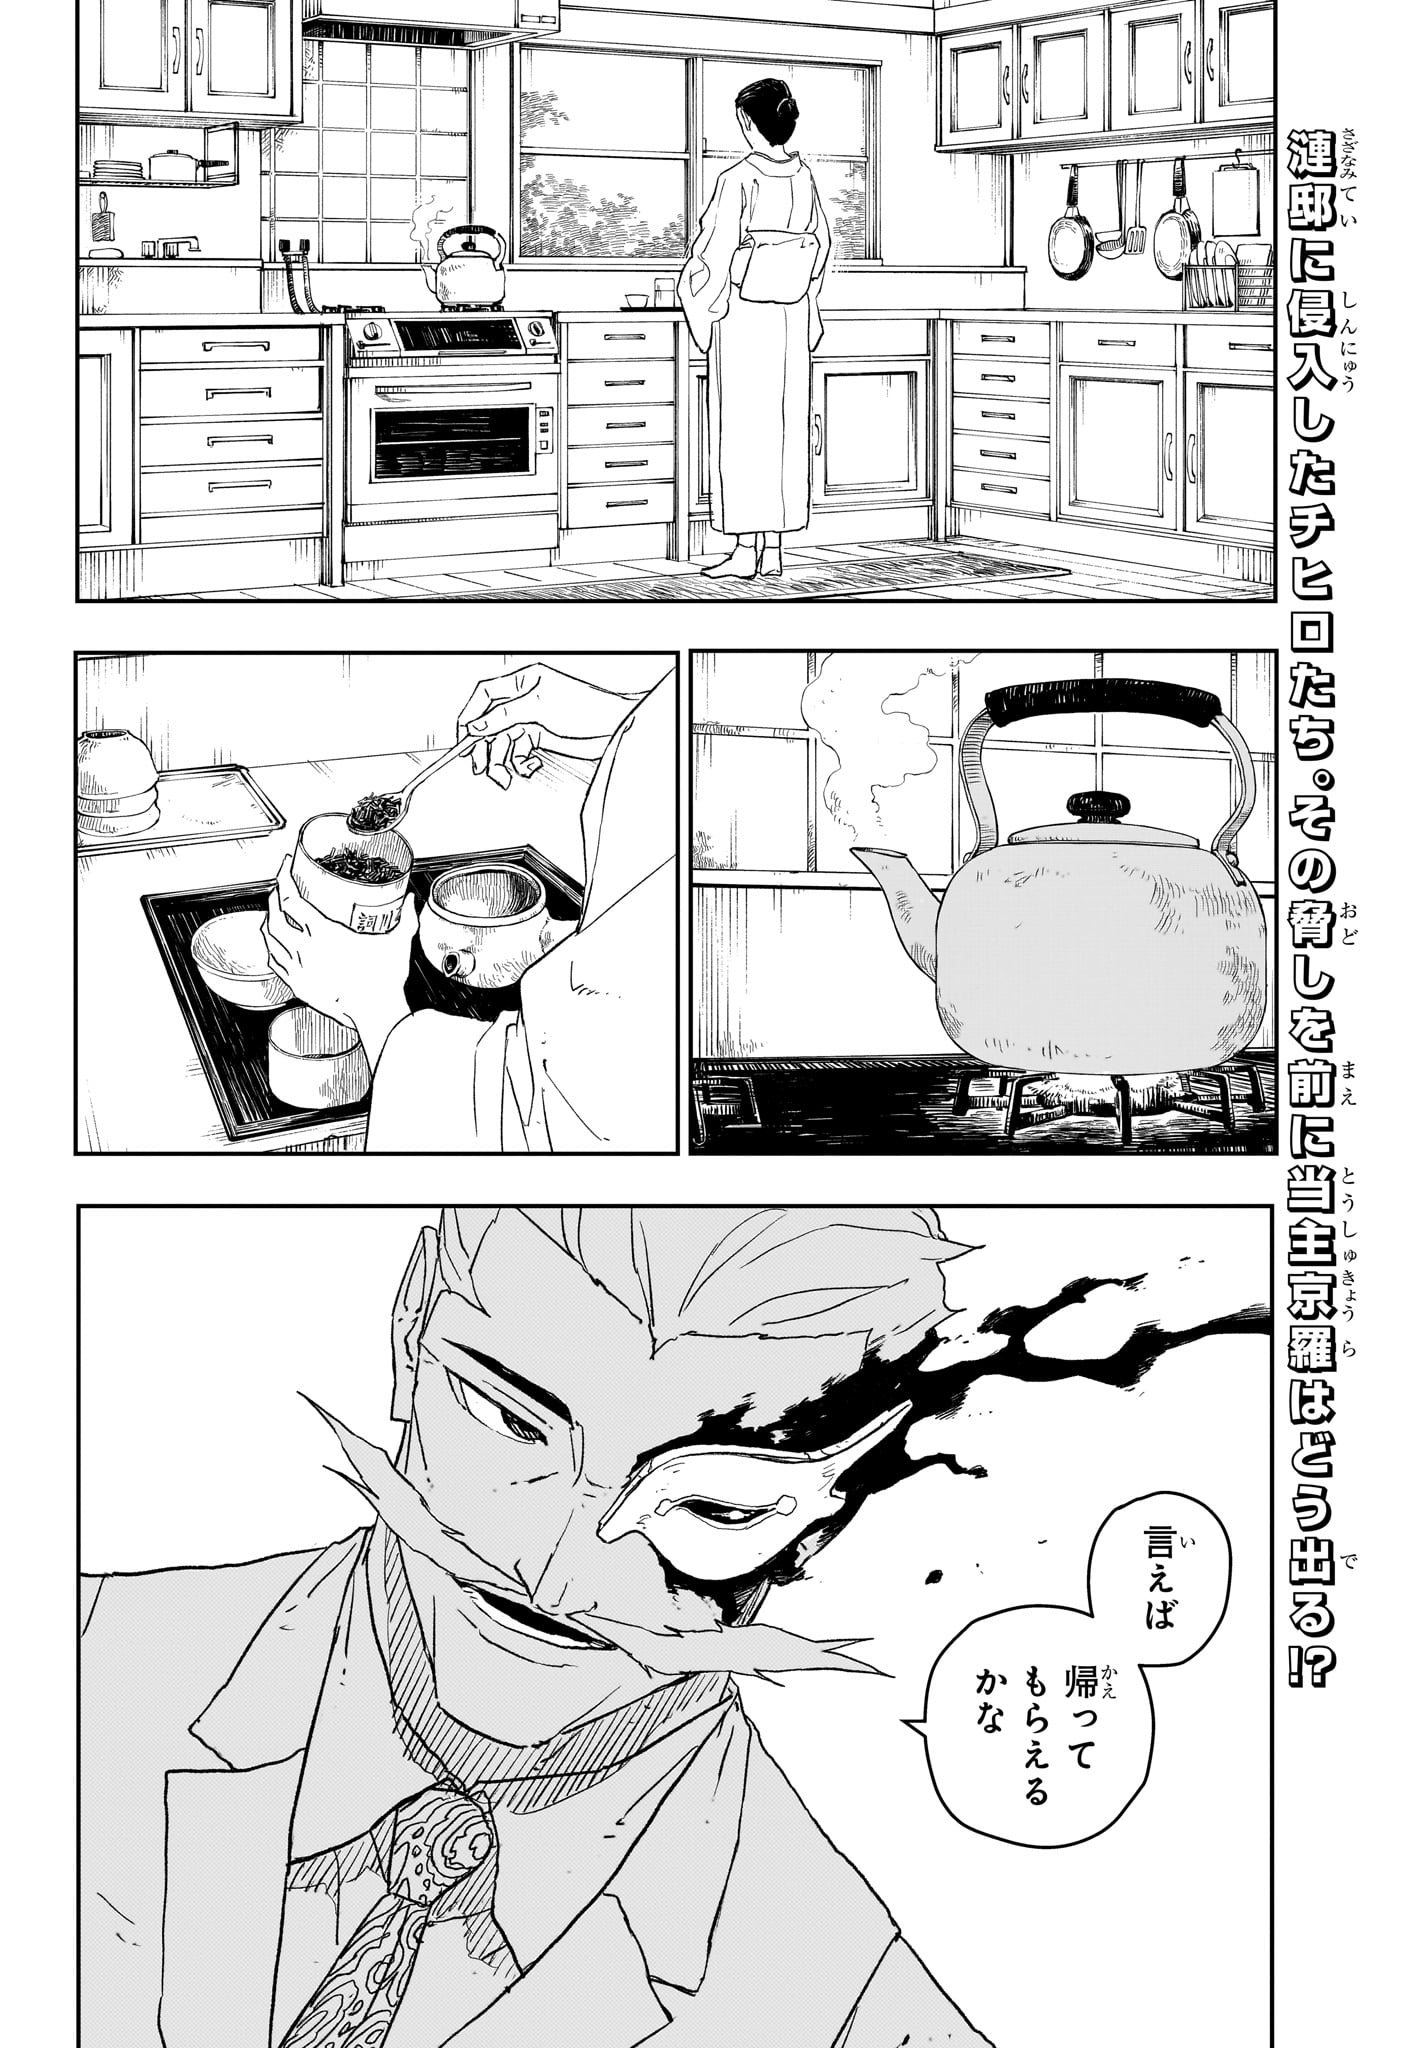 Kagurabachi - Chapter 23 - Page 2